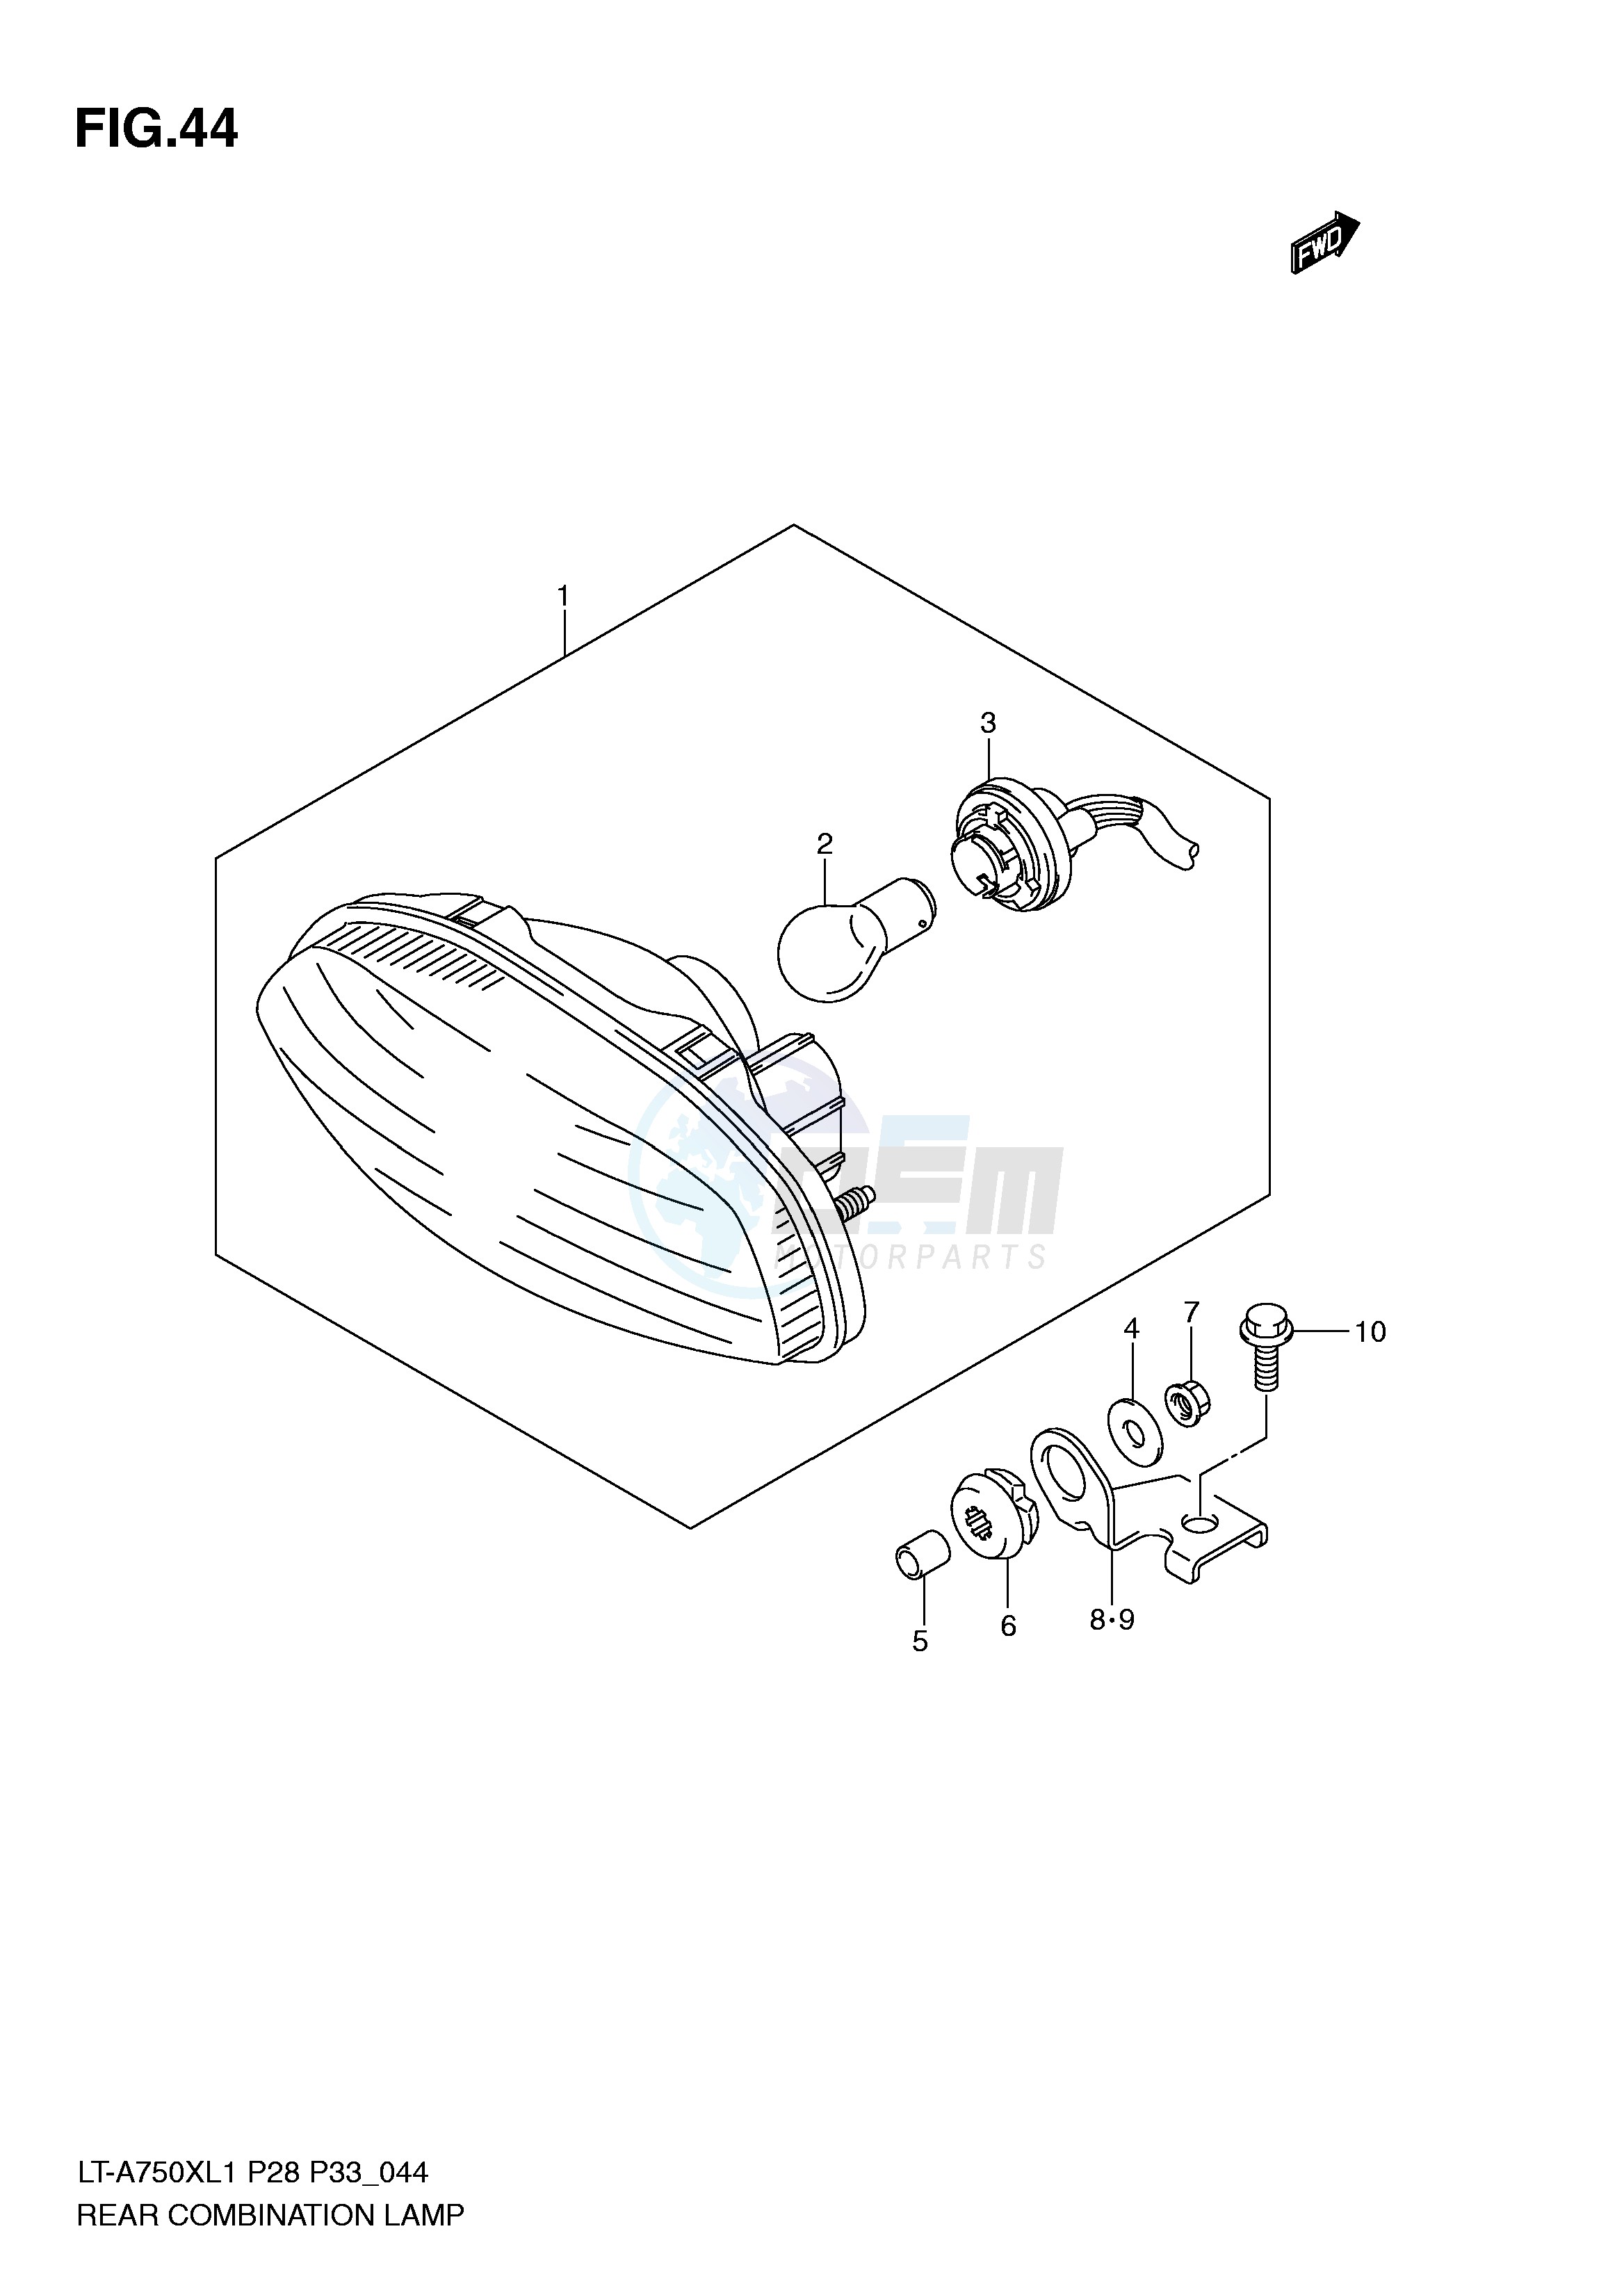 REAR COMBINATION LAMP (LT-A750XL1 P33) image